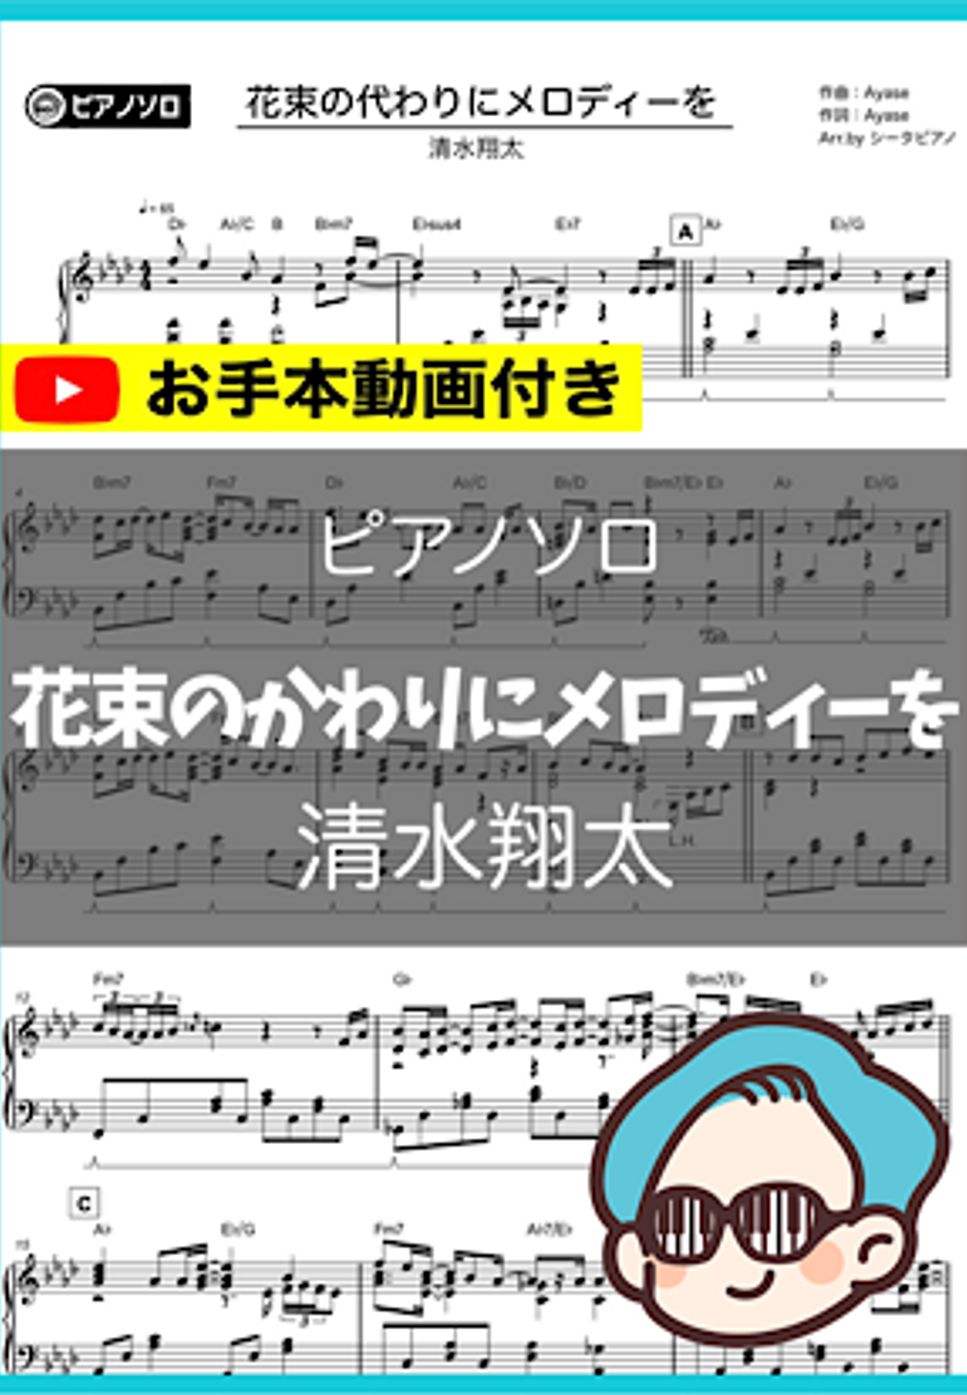 清水翔太 - 花束のかわりにメロディーを by シータピアノ